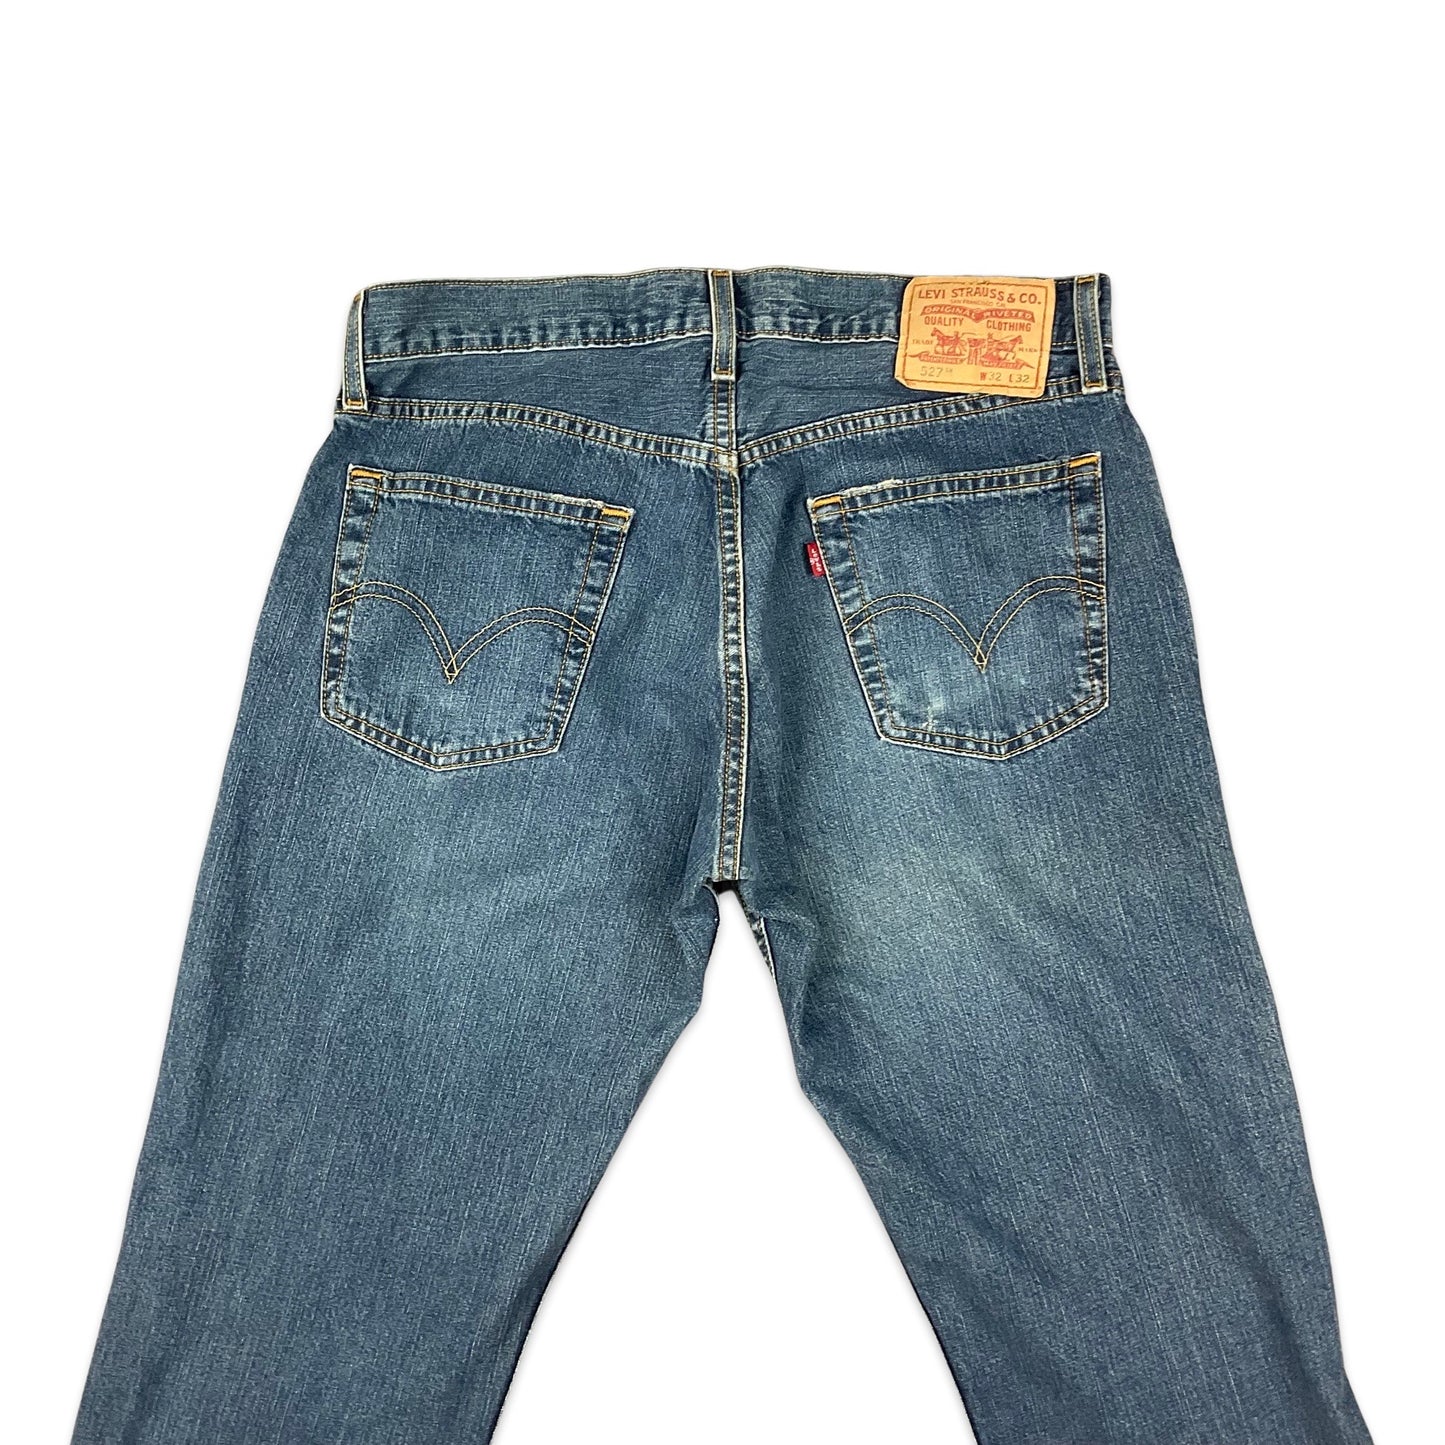 Levi's 527 Blue Jeans 33W 31L